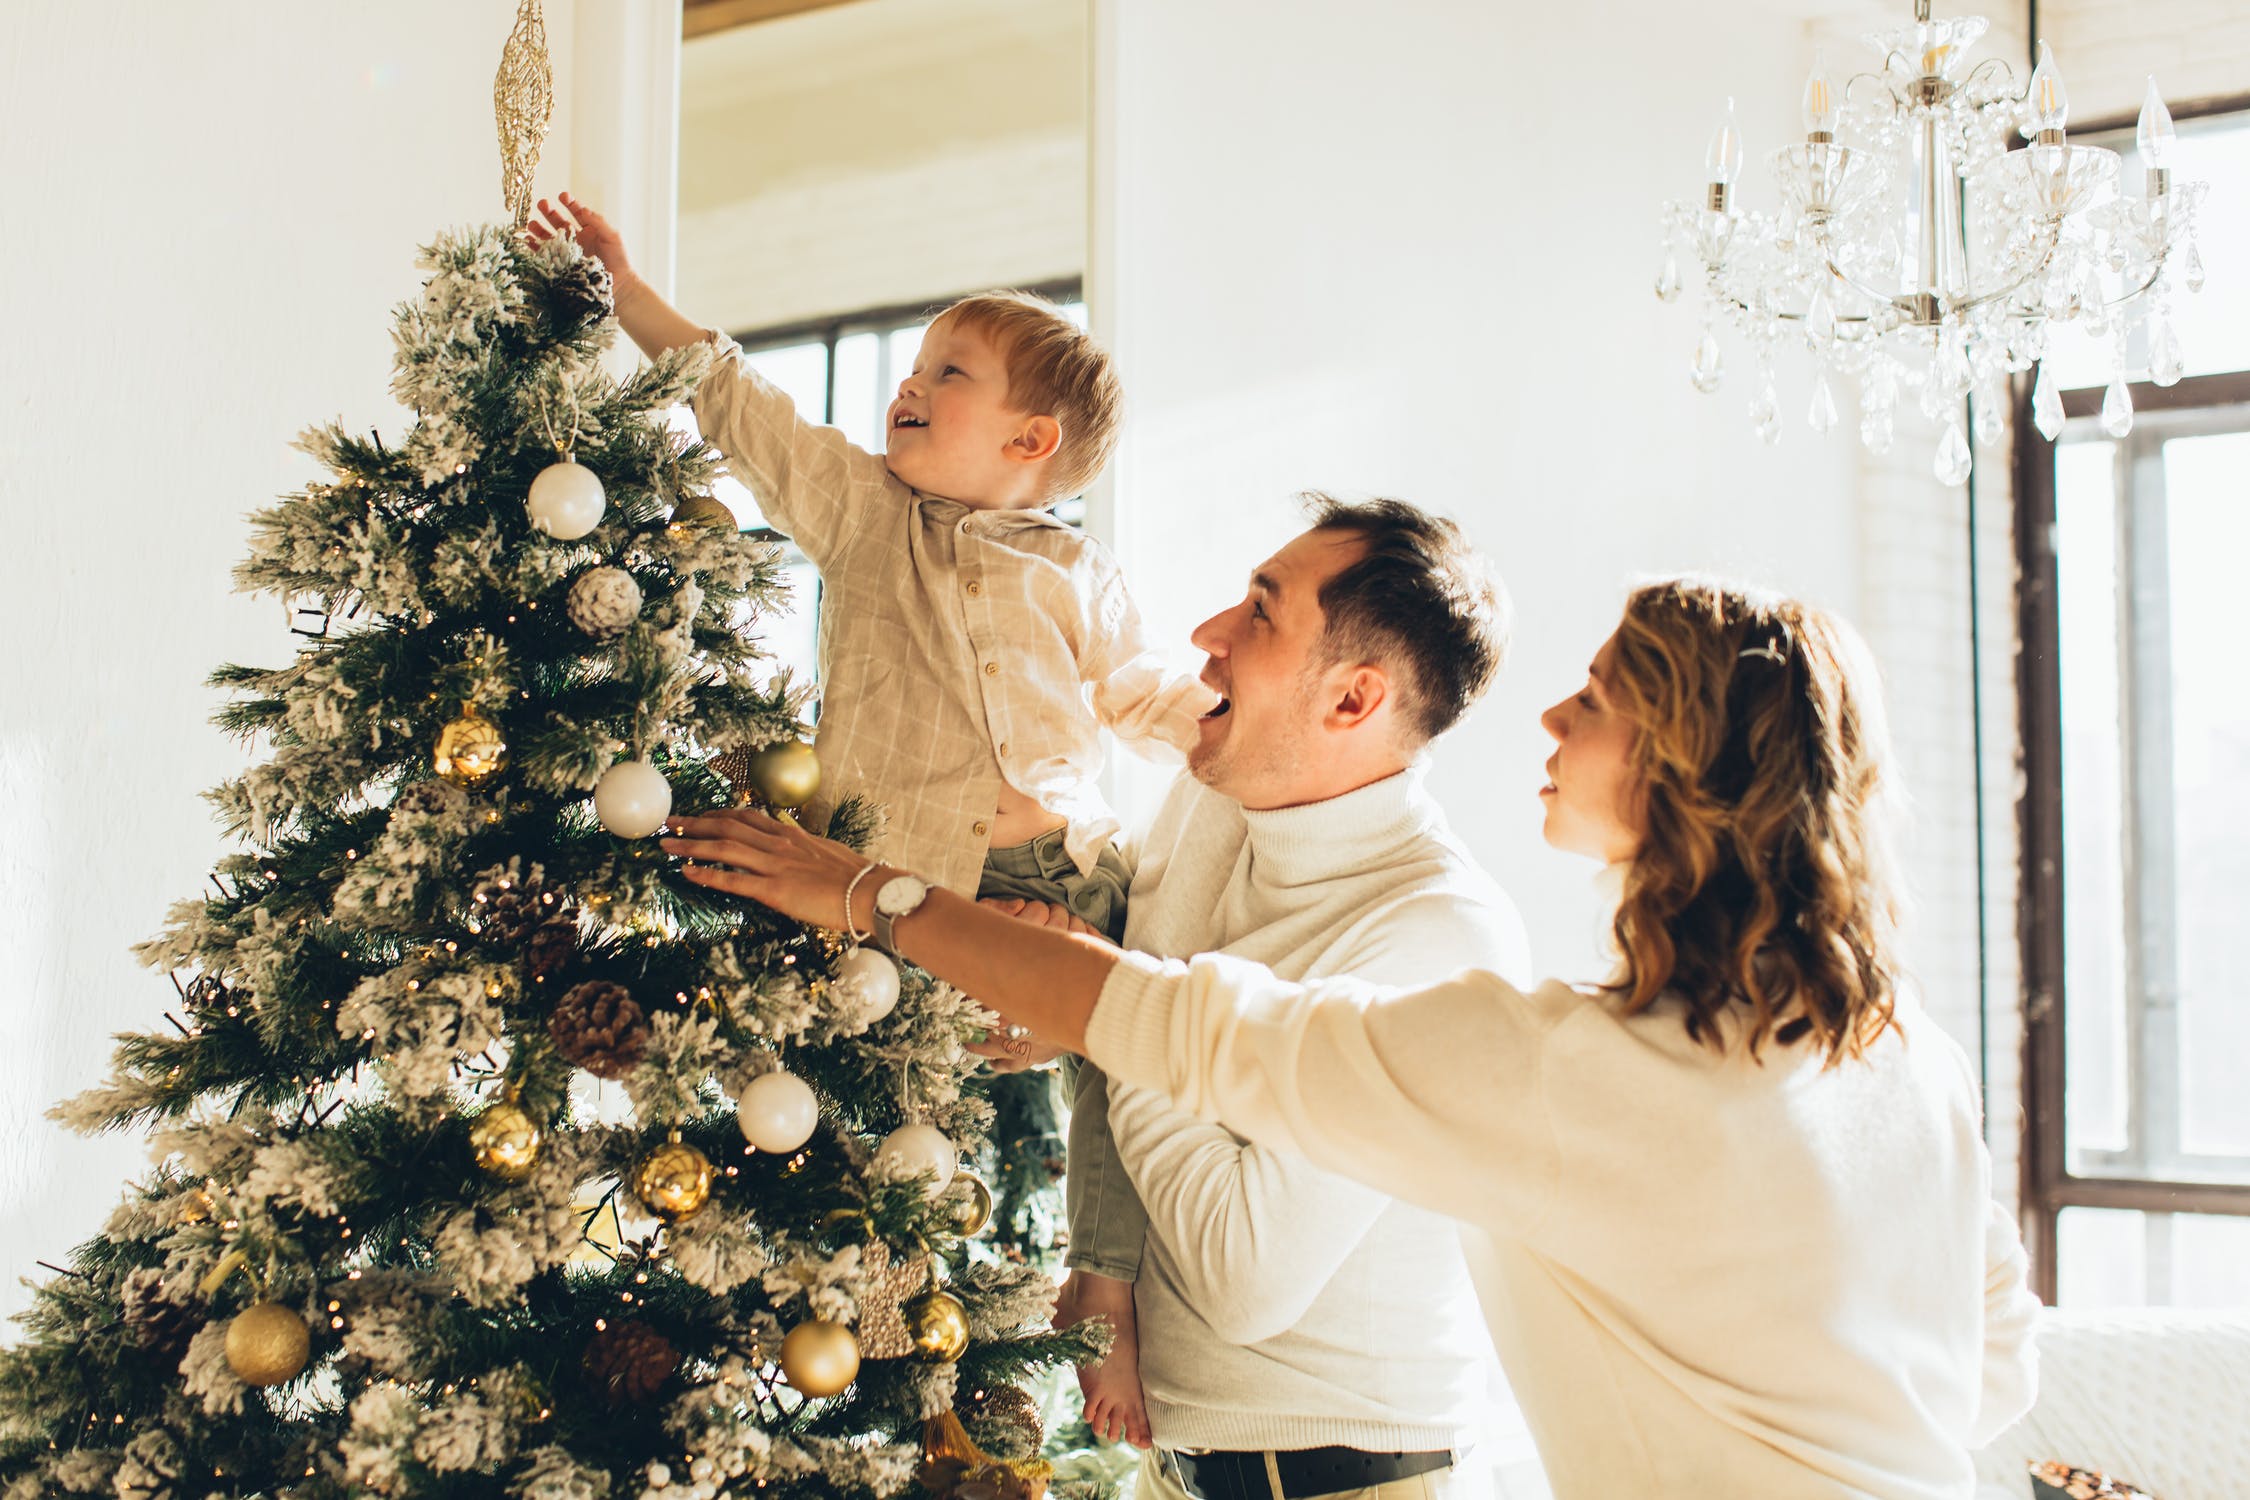 Wanda sah, wie ihr Sohn den Weihnachtsbaum schmückte | Quelle: Pexels